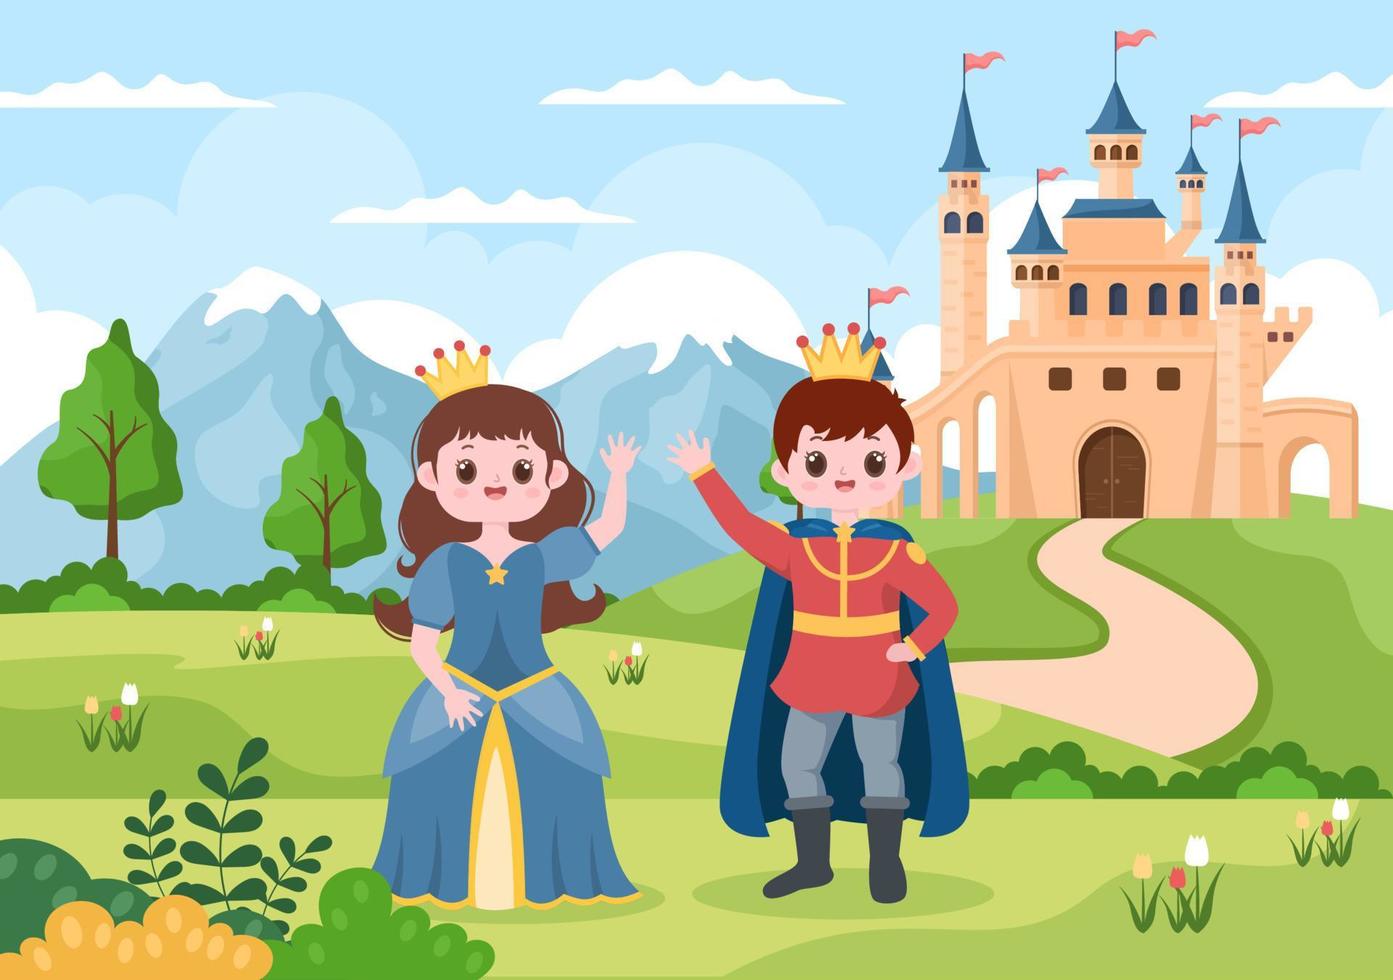 prins en koningin voor het kasteel met majestueuze paleisarchitectuur en sprookjesachtig boslandschap in cartoon vlakke stijlillustratie vector